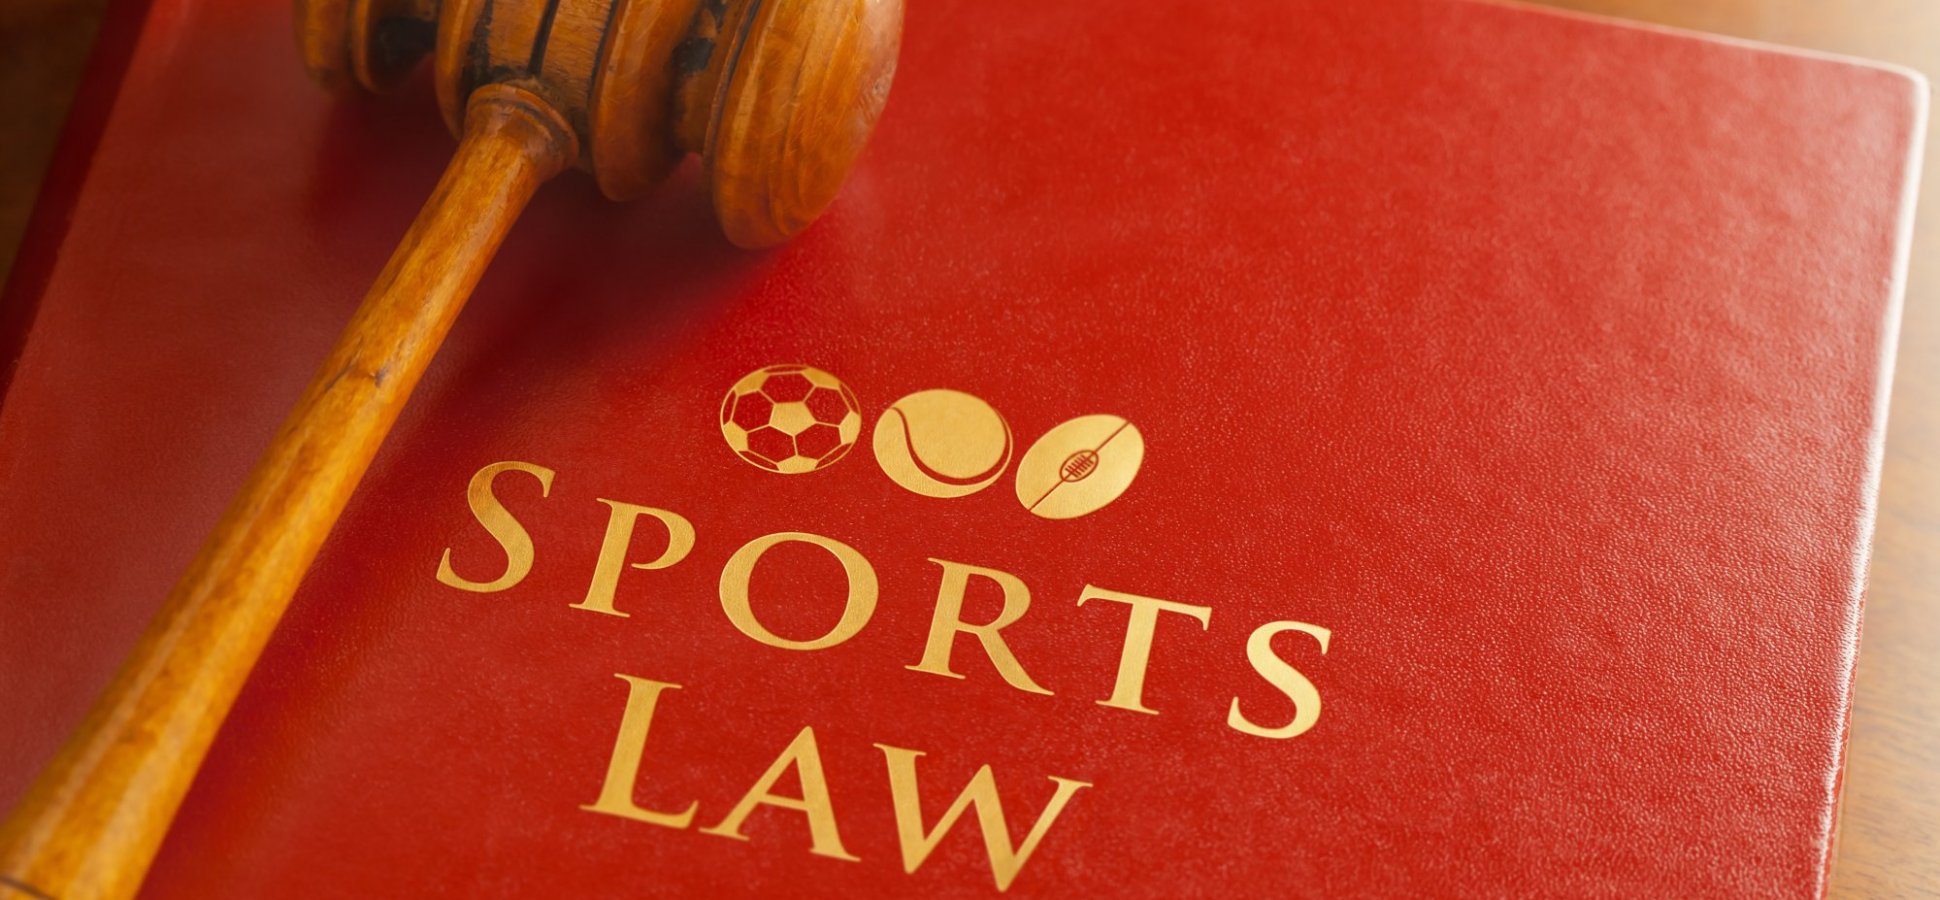 presentation on sports law